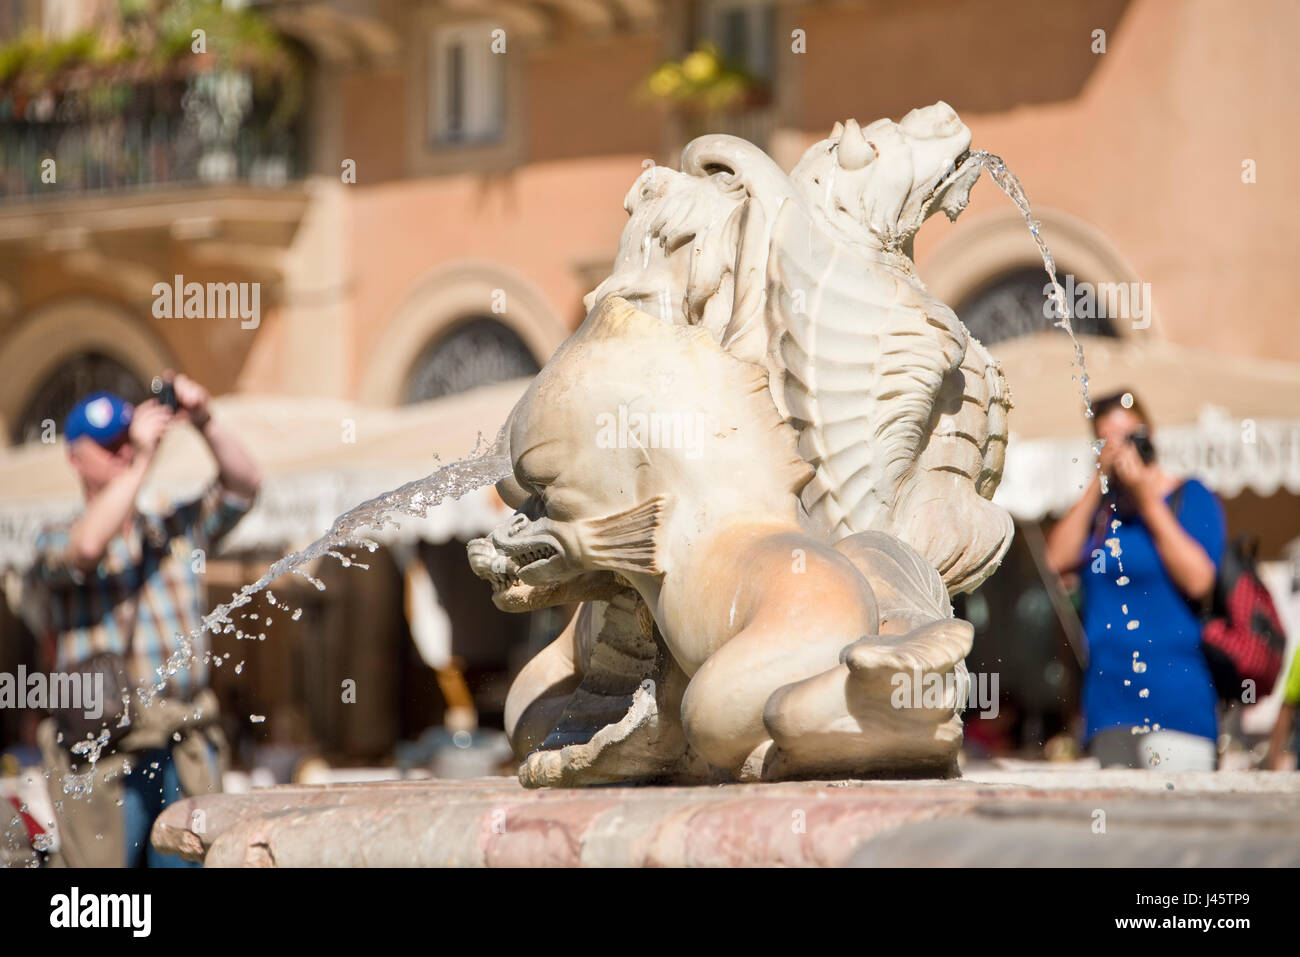 Una chiusura su la Fontana del Moro o la Fontana del Moro in Piazza Navona con 2 fuori fuoco persone turisti visitatori scattano fotografie in background. Foto Stock